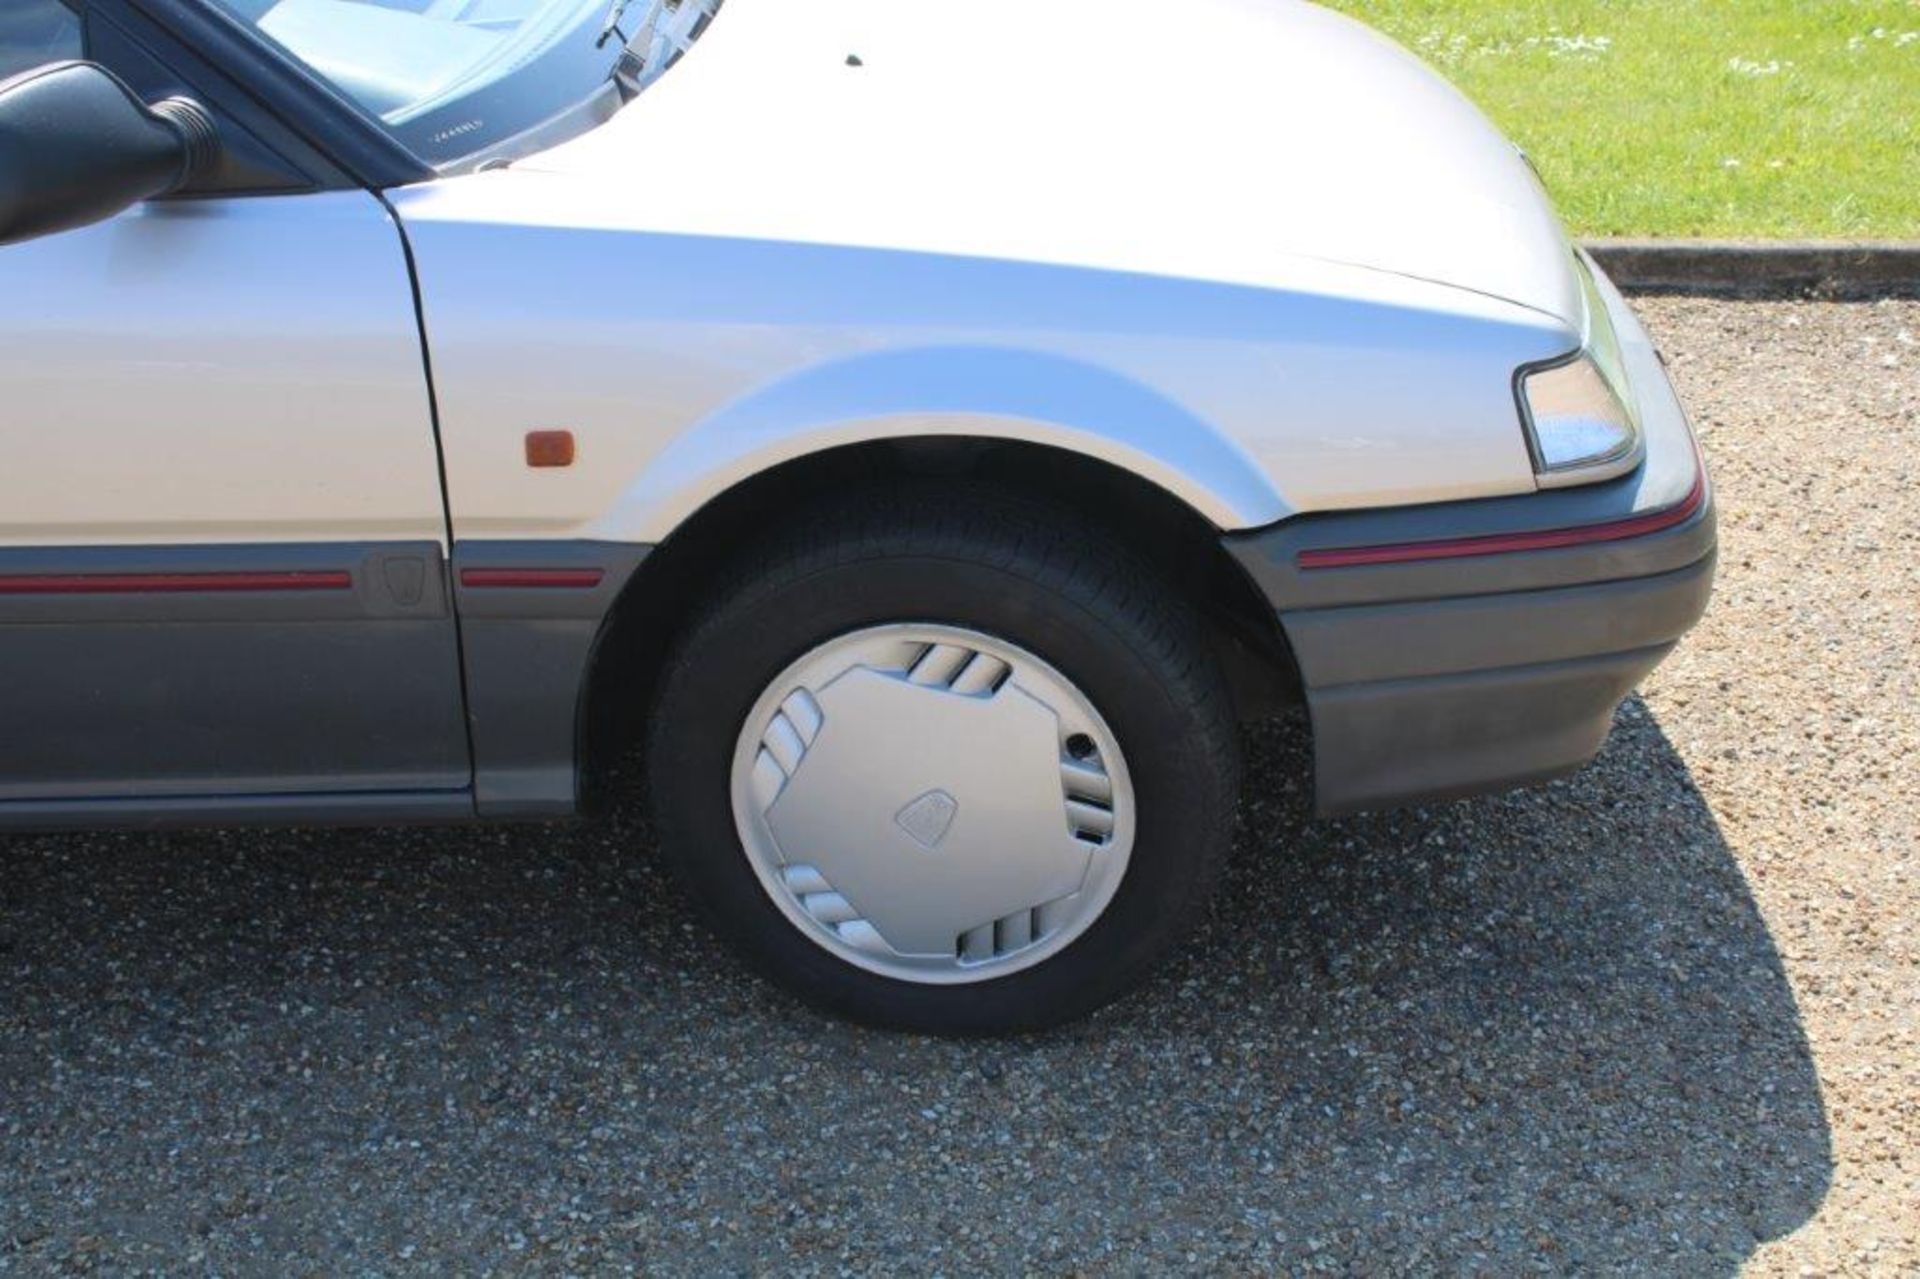 1992 Rover 216 GSi Auto - Image 11 of 24